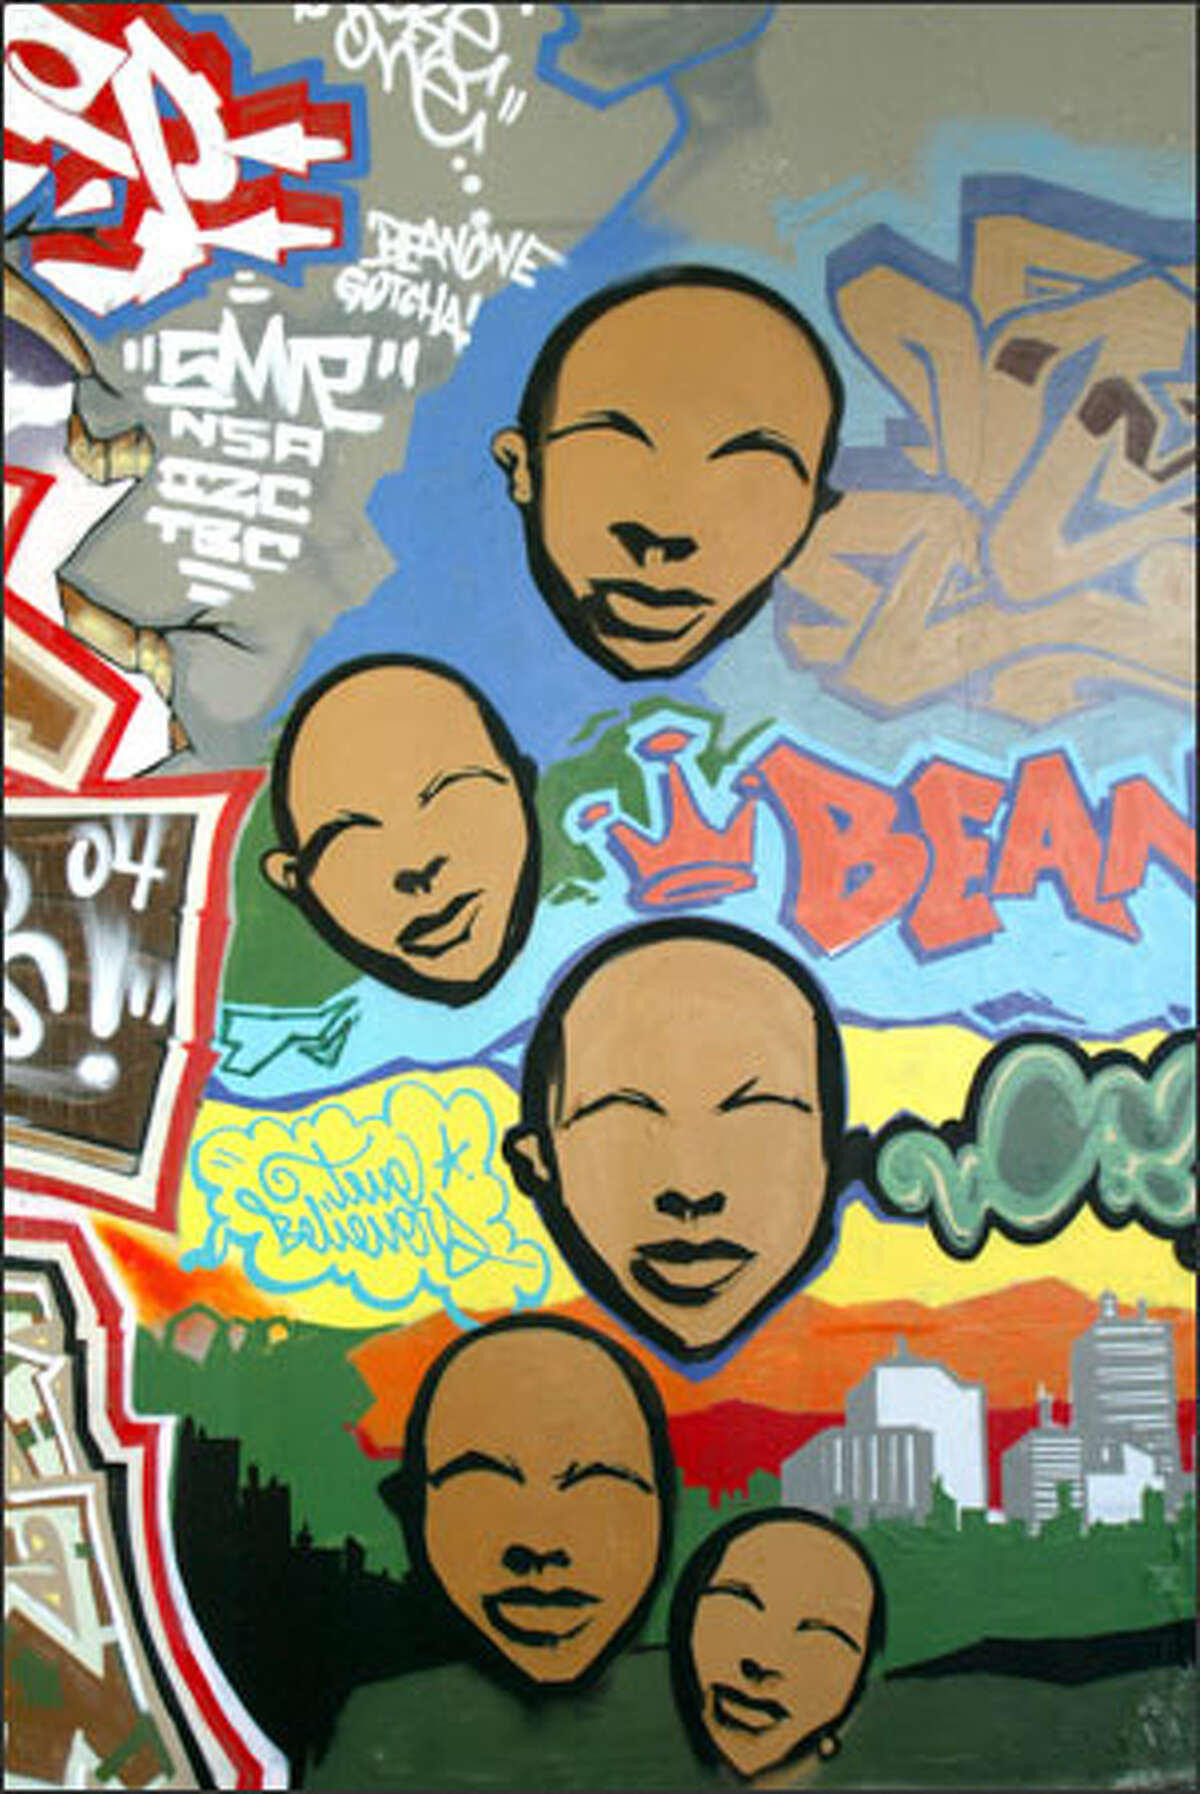 Art or graffiti? City will decide